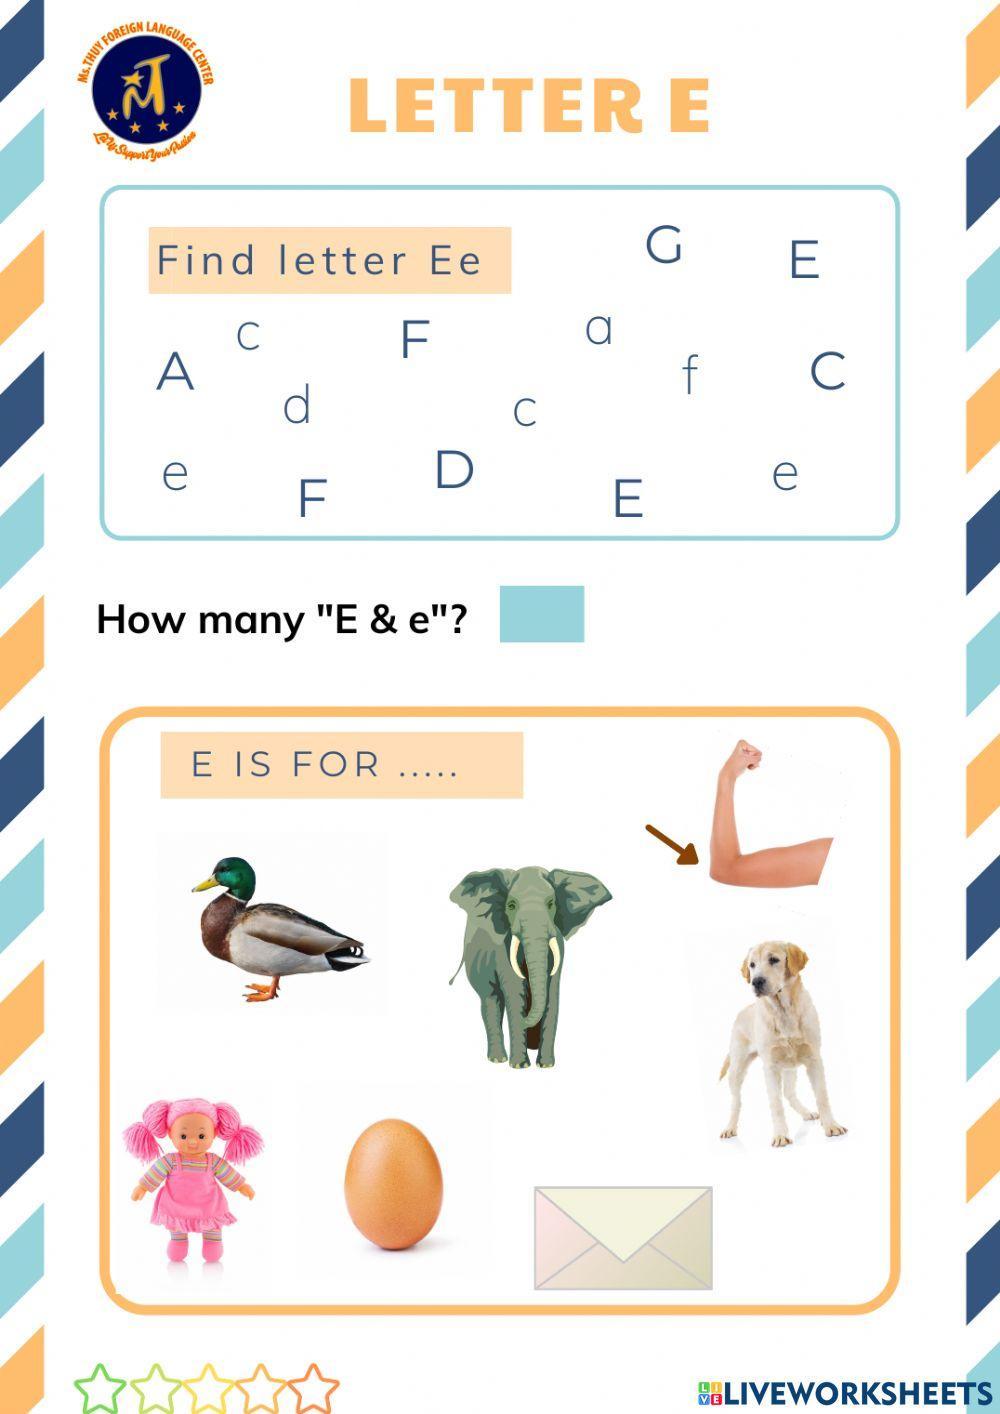 Find Letter Ee